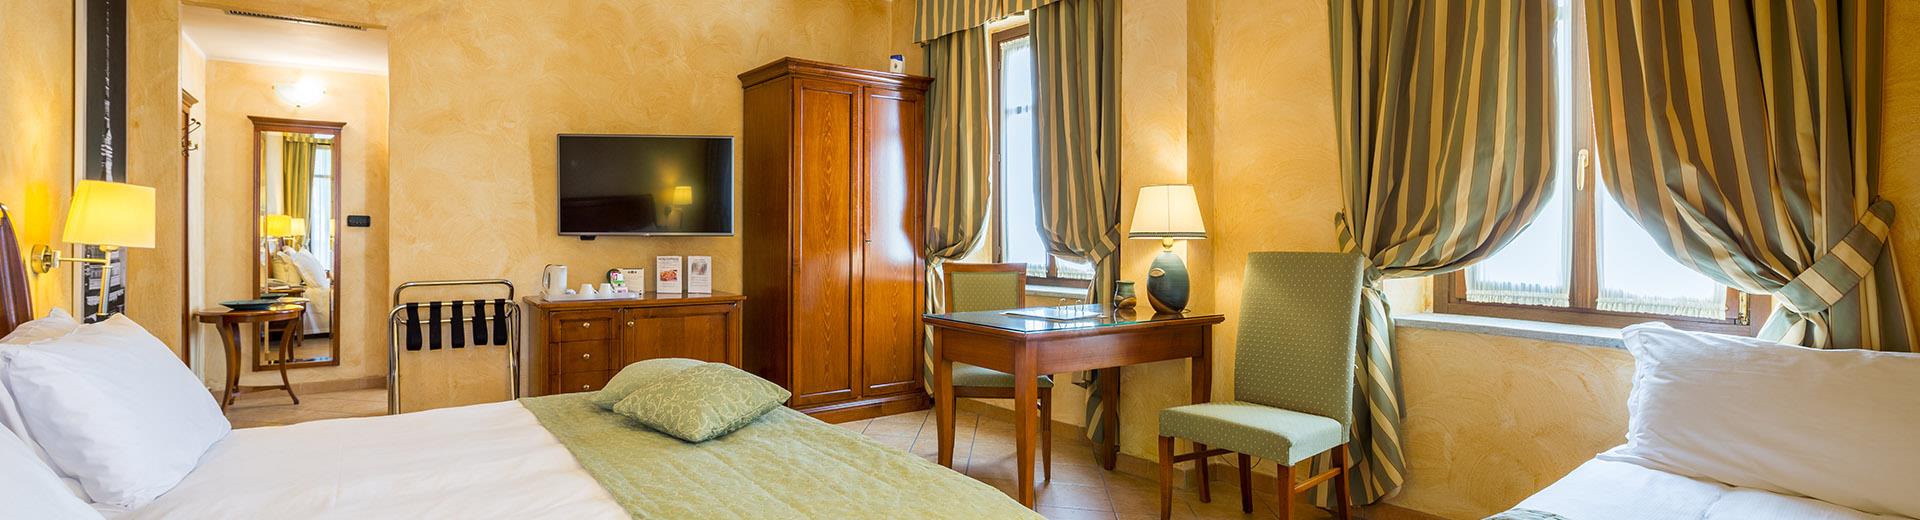 Die Zimmer des Best Western Plus Hotels Le Rondini Torino sind schlicht und elegant und spiegeln den Stil des alten Bauernhauses wider und machen Ihren Aufenthalt zu einem unvergesslichen Erlebnis